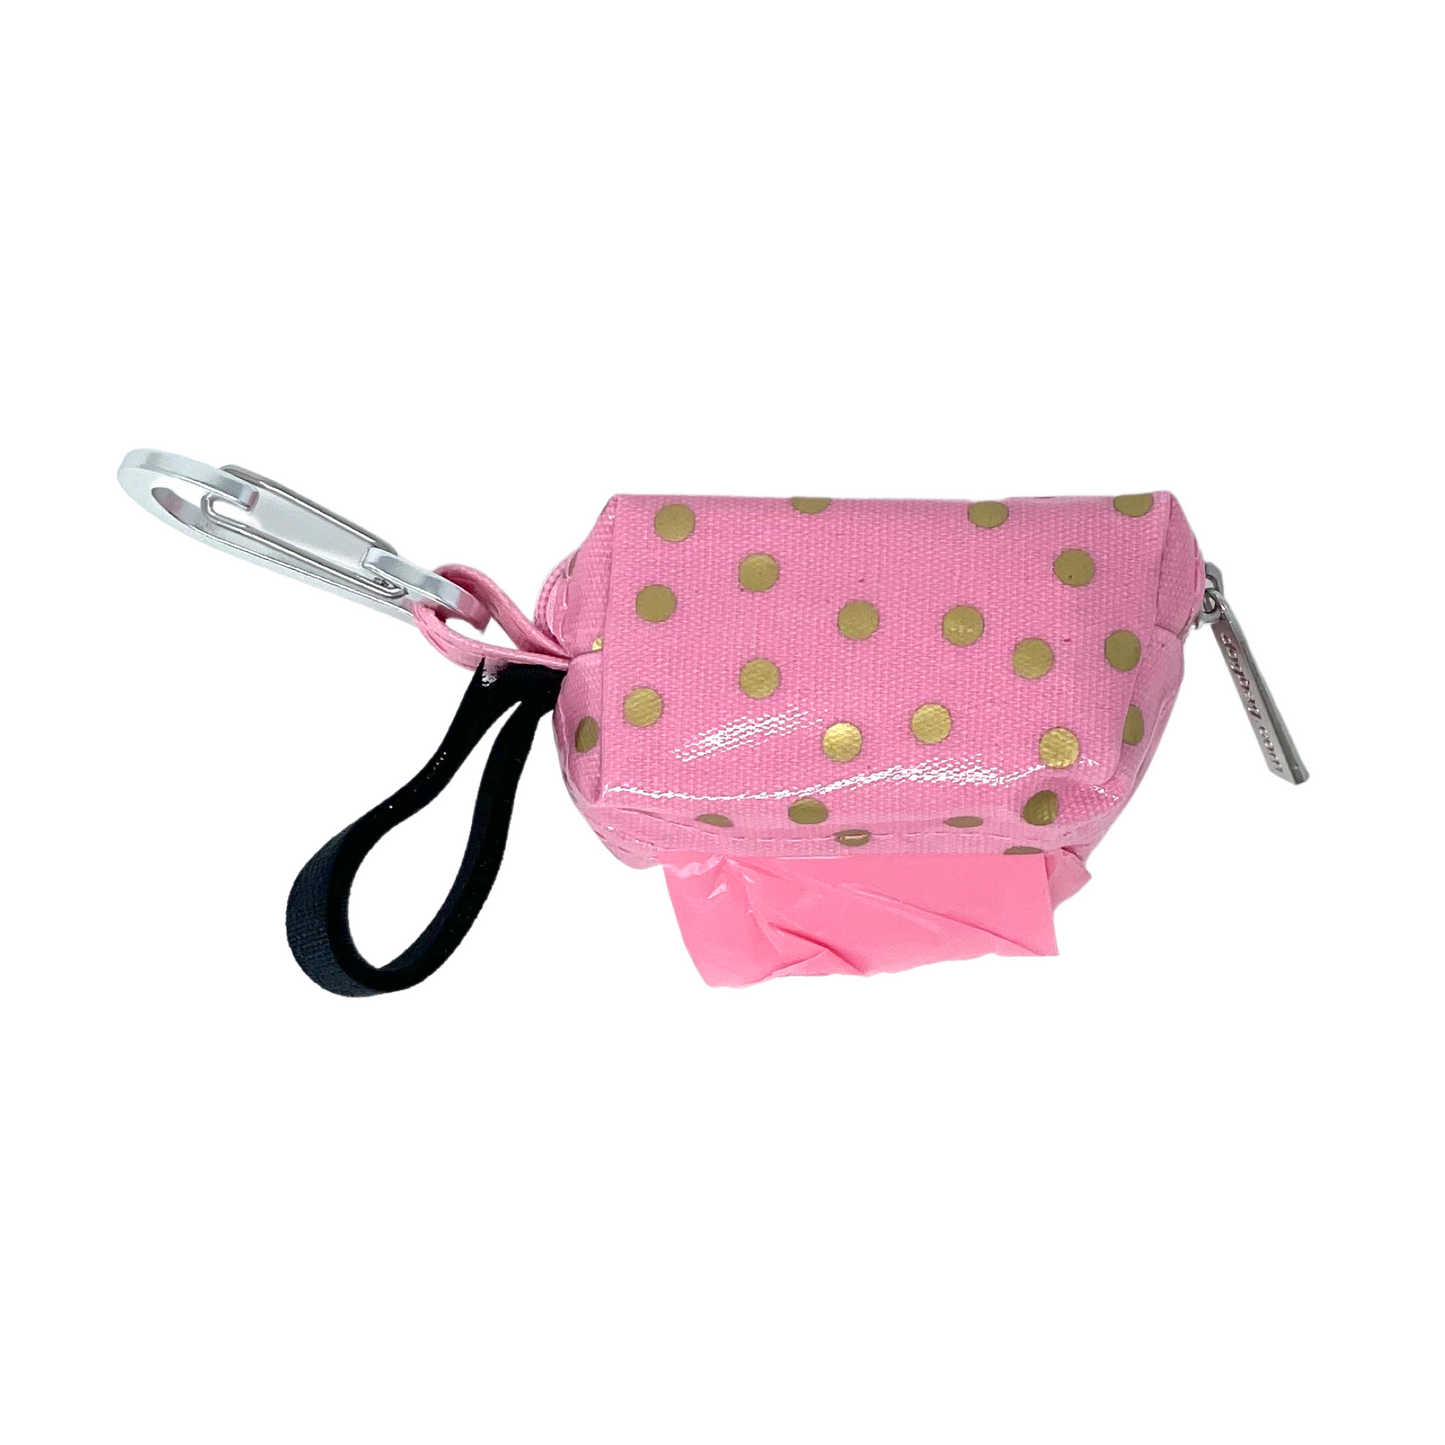 Poo Bag Dispenser - Pink & Gold Polka Dot